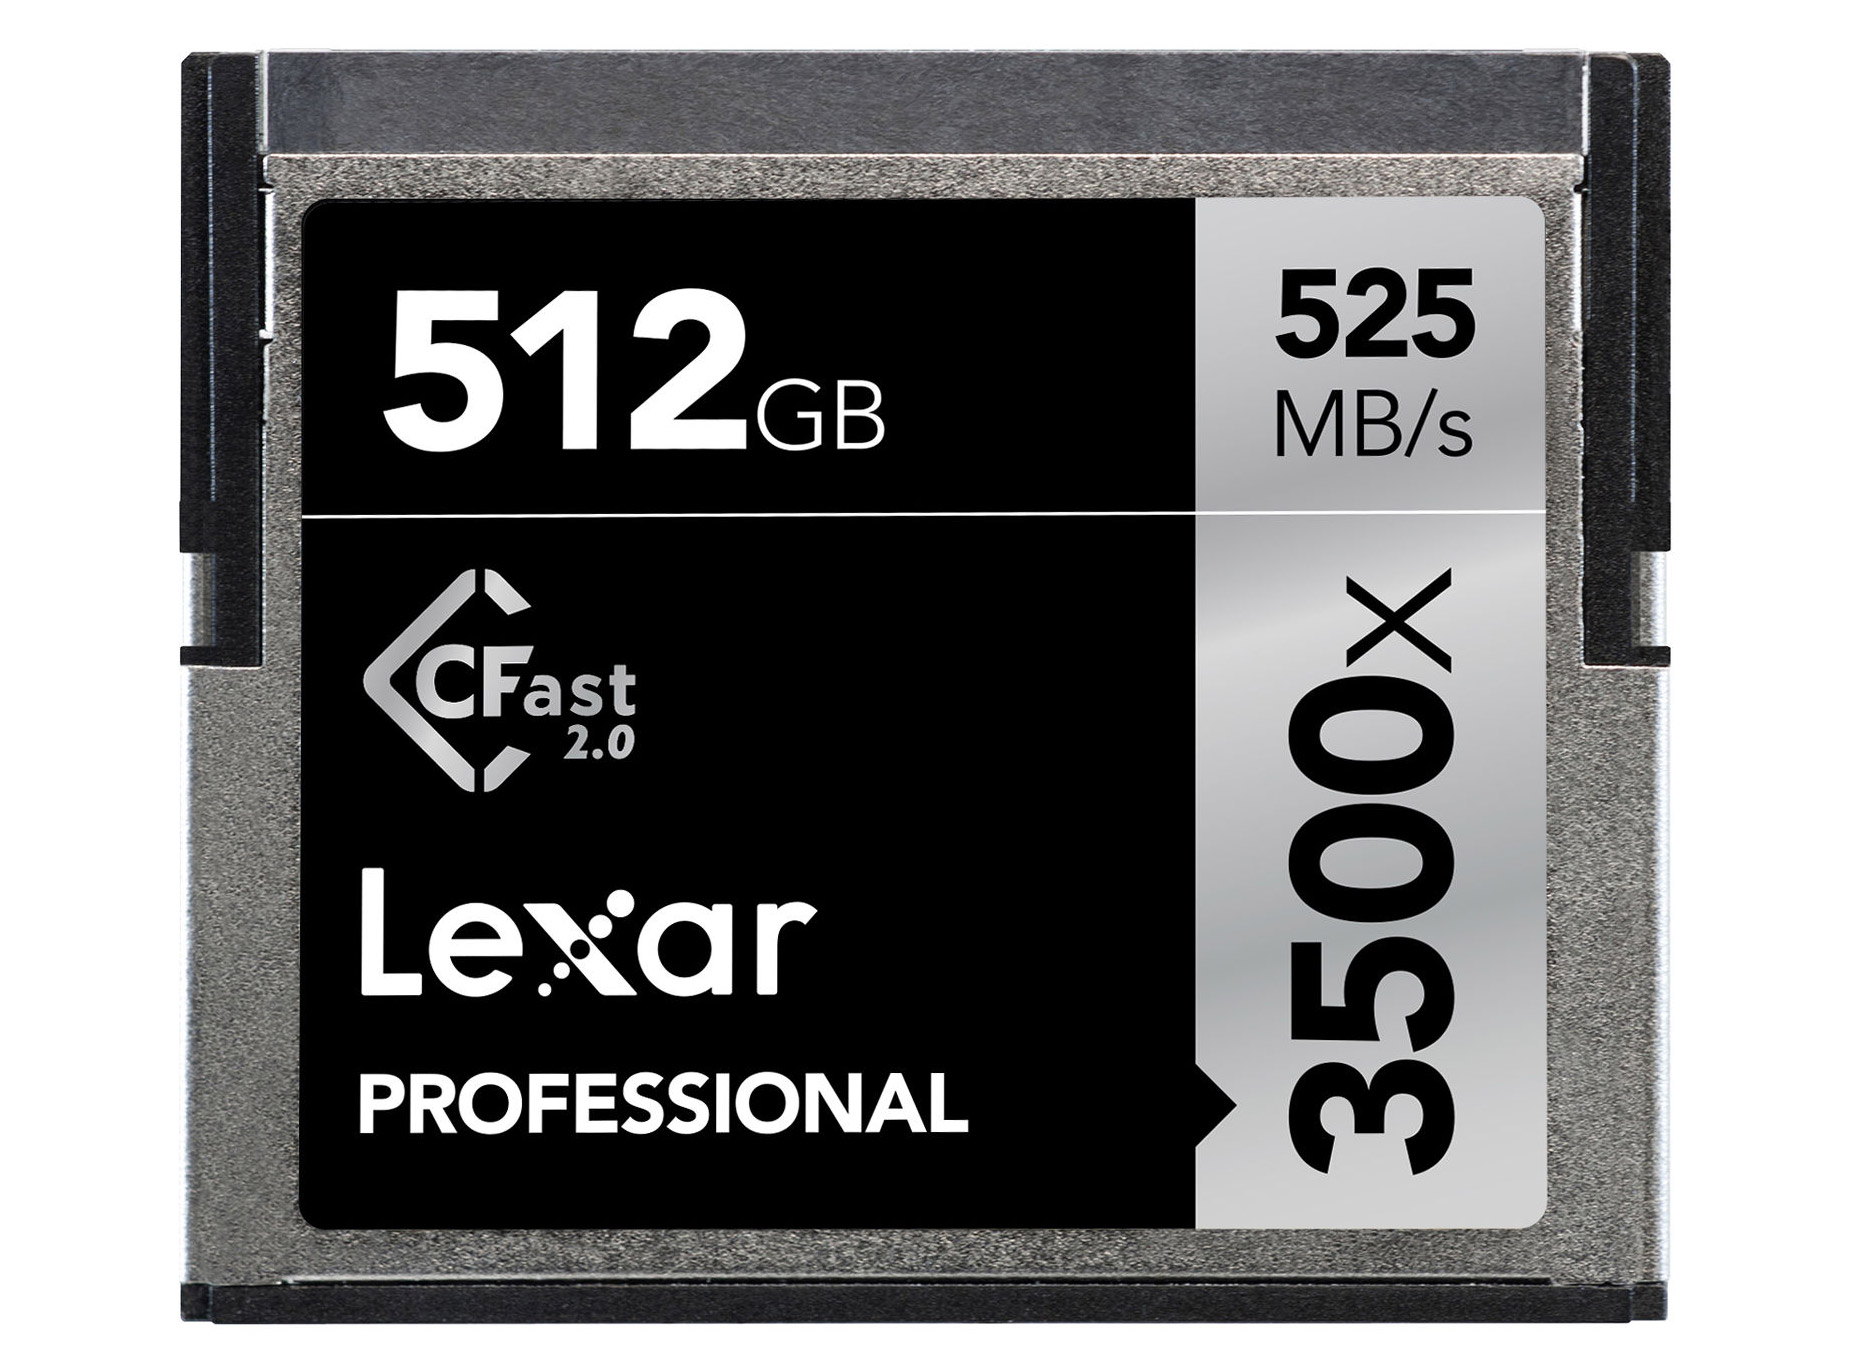 Lexar Professional CFast 512 GB 3500x (525 MB/s)